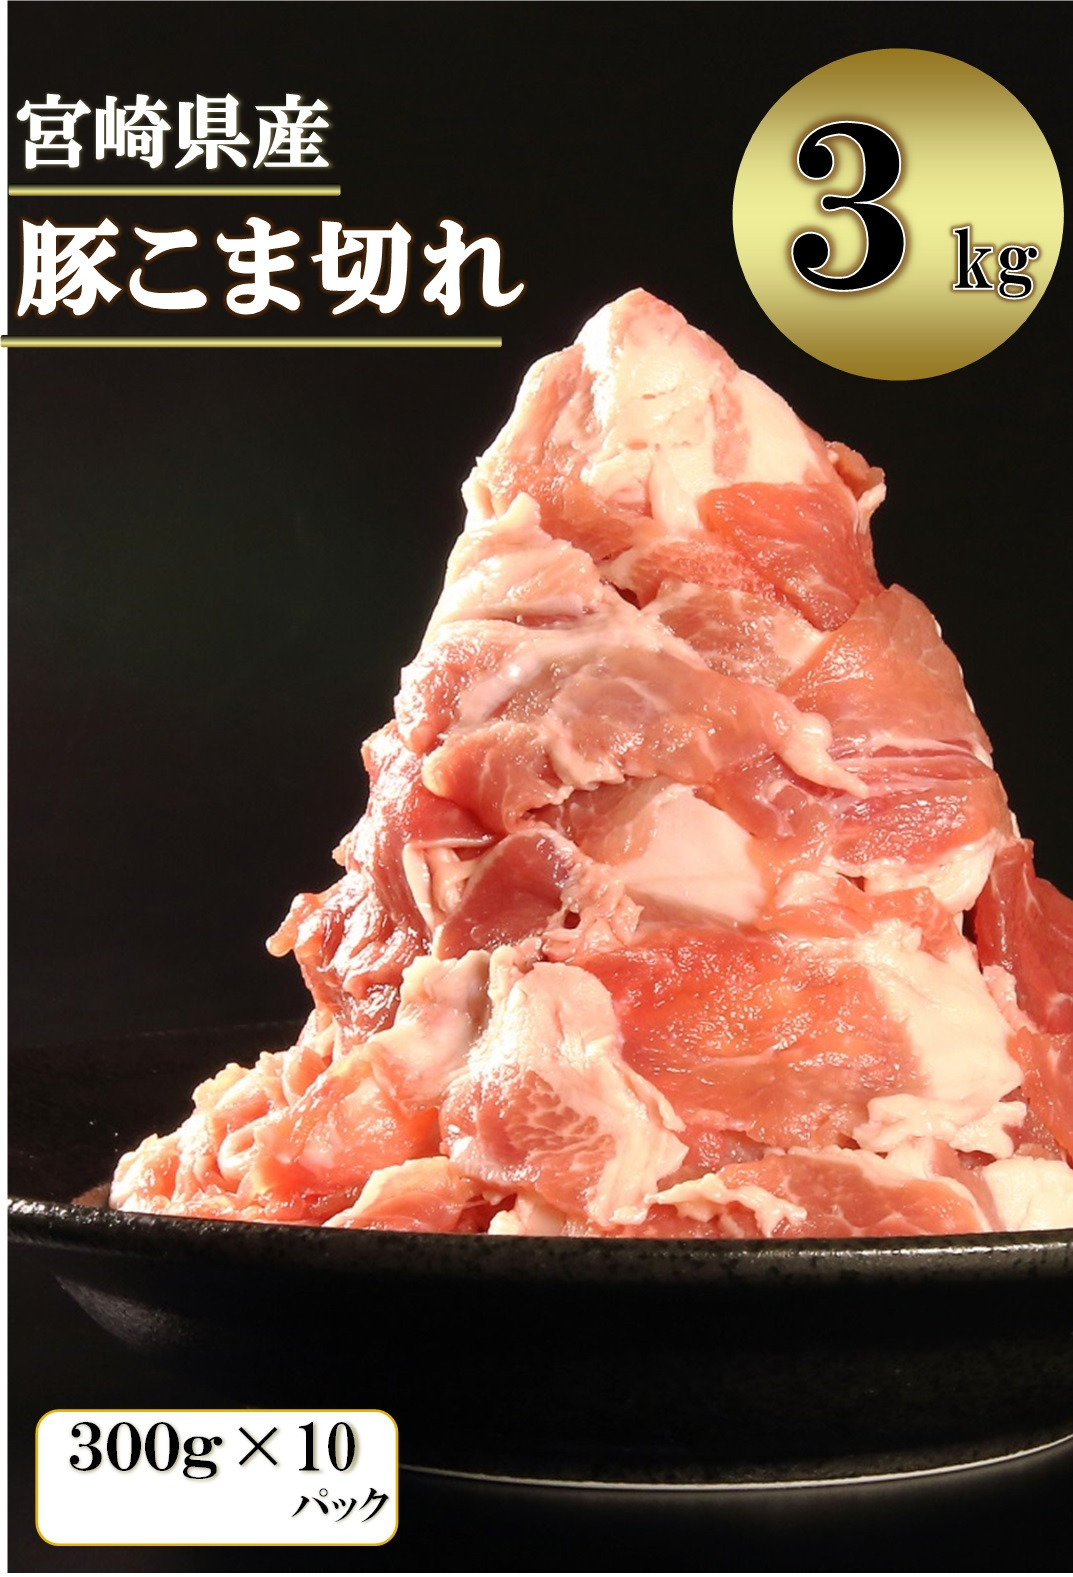 宮崎県産 豚こま切れ 3kg 12 16 日向市日向市 ふるさと納税 ふるさとチョイス